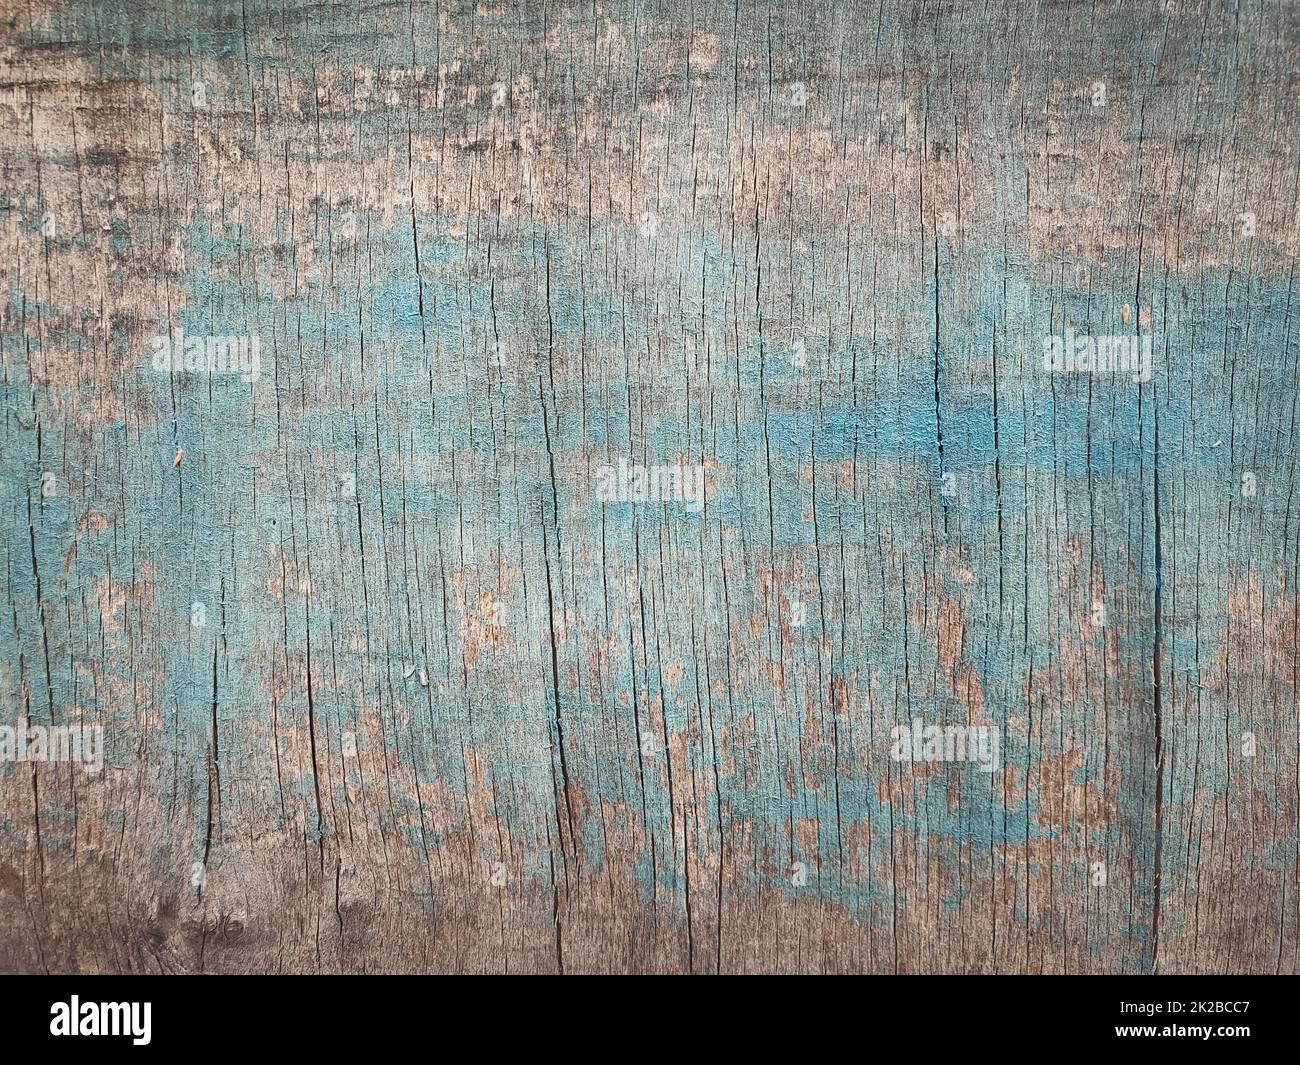 Vecchia texture in legno con vernice astratta blu. Grunge asse o legno compensato superficie di fondo Foto Stock